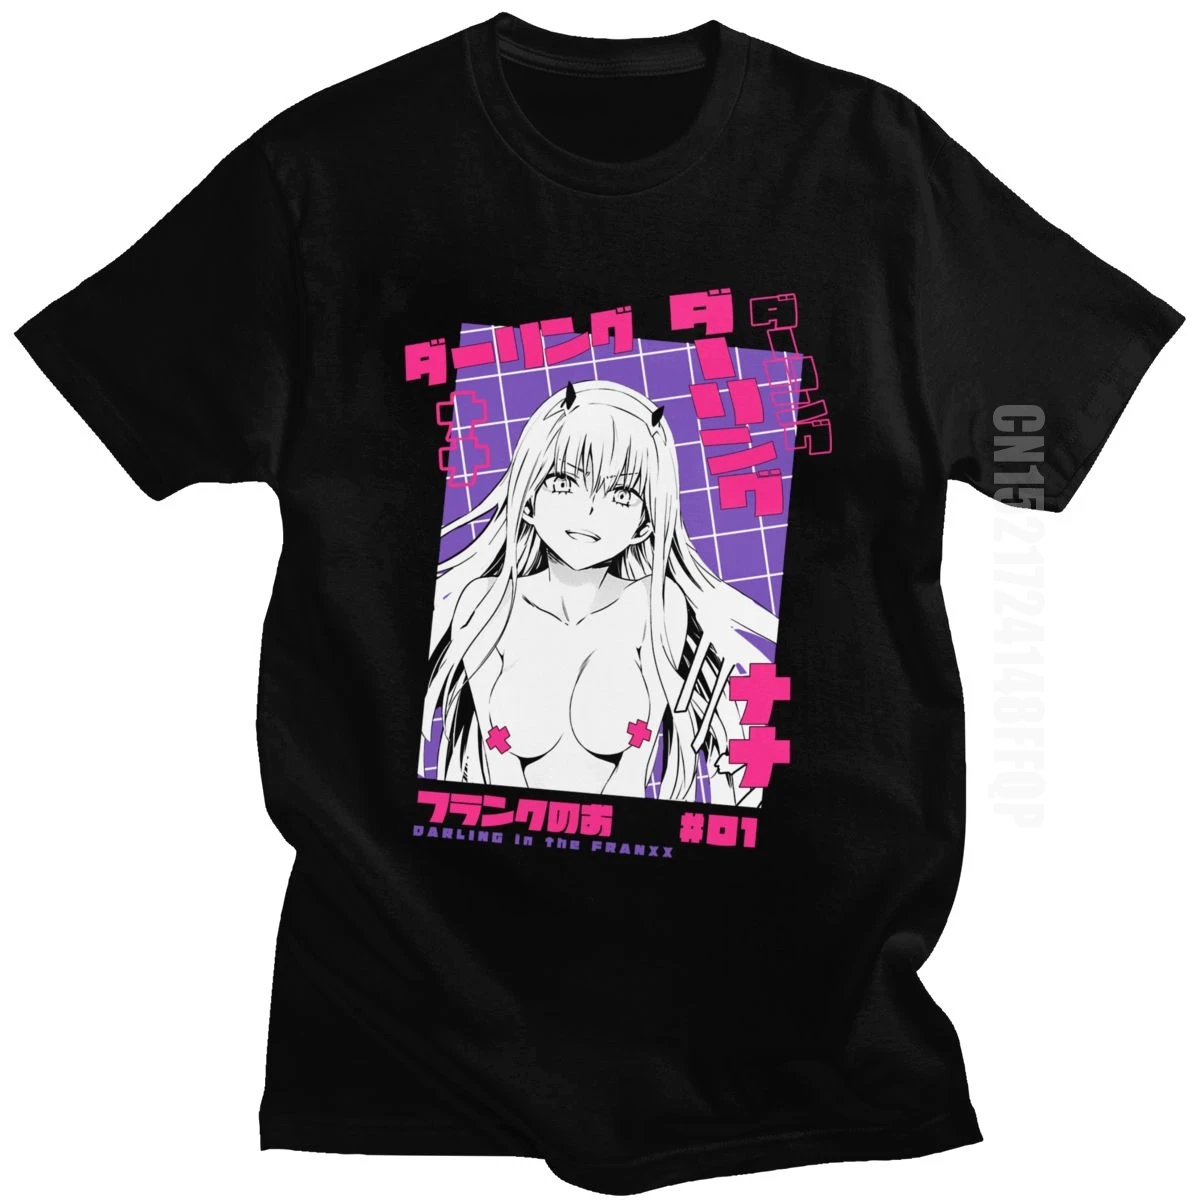 Cool Tshirt Men Darling In The Franxx Tshirt Waifu 100% Cotton Tee Tops O-neck Casual Anime T-shirt Manga Zero Two Shirt Kawaii